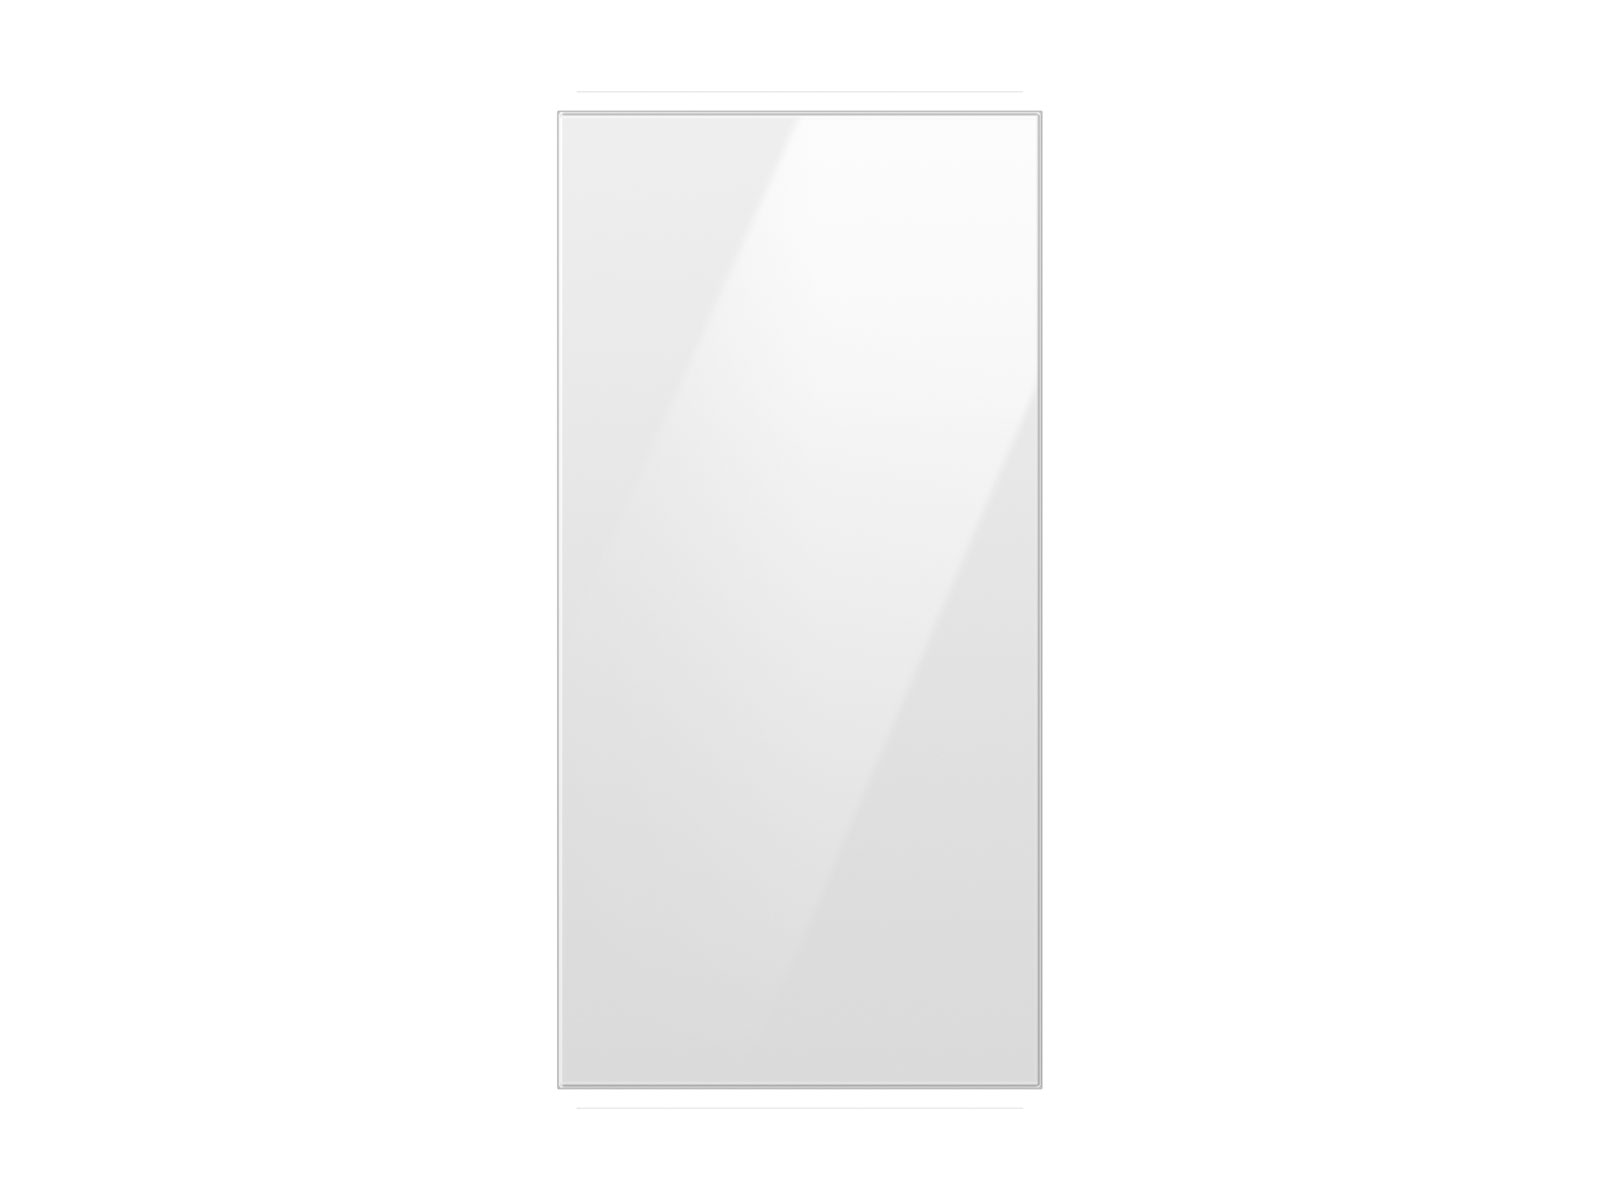 Photos - Fridge Samsung Bespoke 4-Door French Door Refrigerator Panel in White Glass - Top 